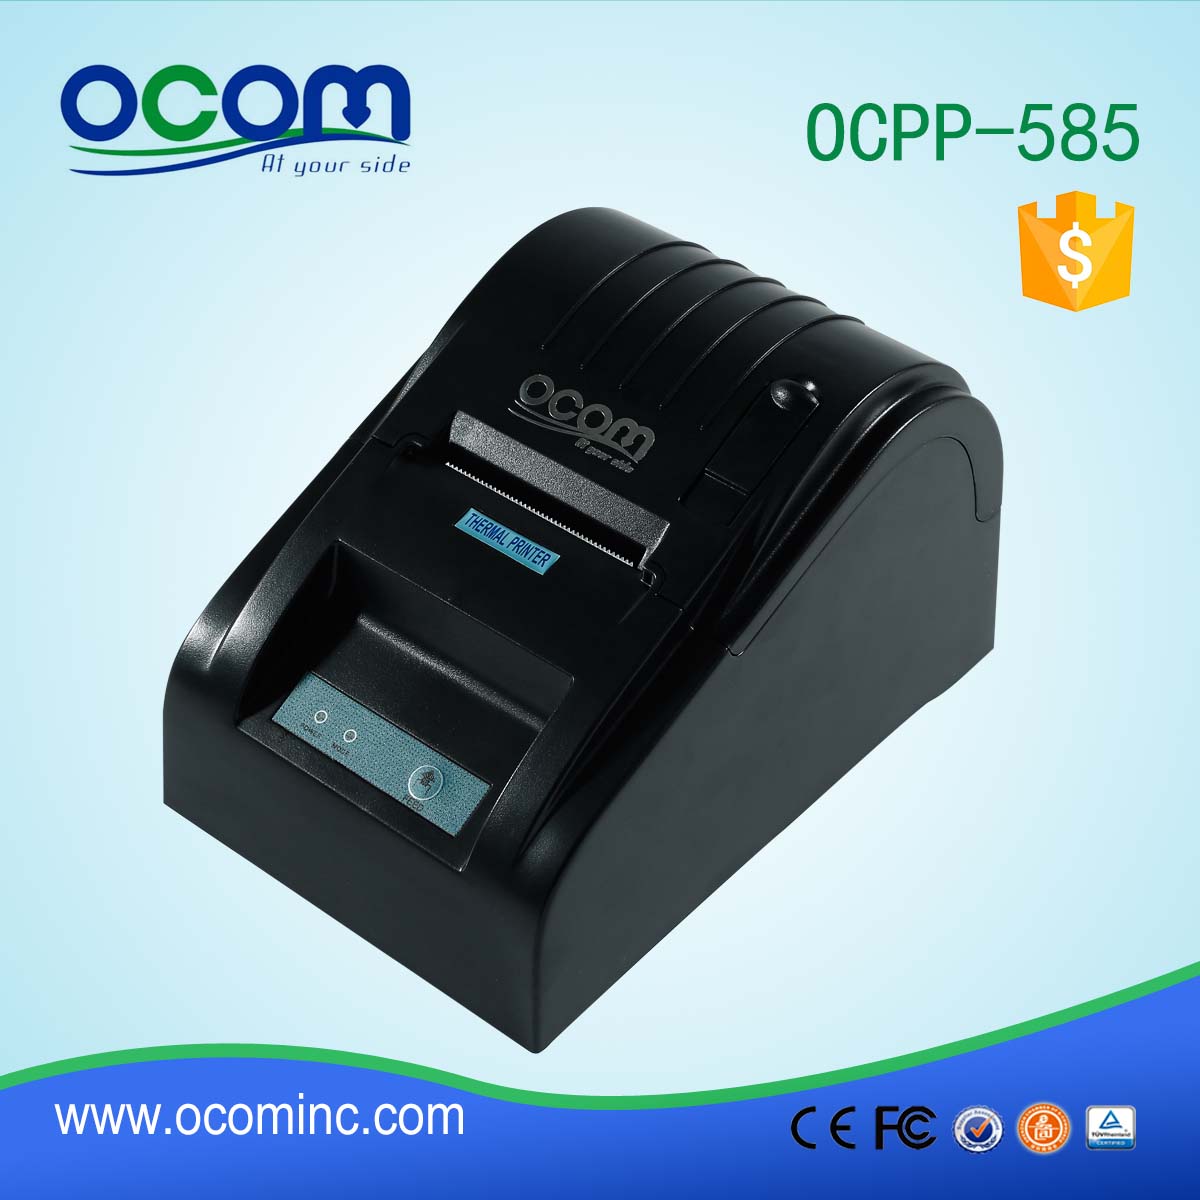 OCPP-585-P Impresora térmica POS de alta calidad más económica de 58 mm $ 17 por unidad